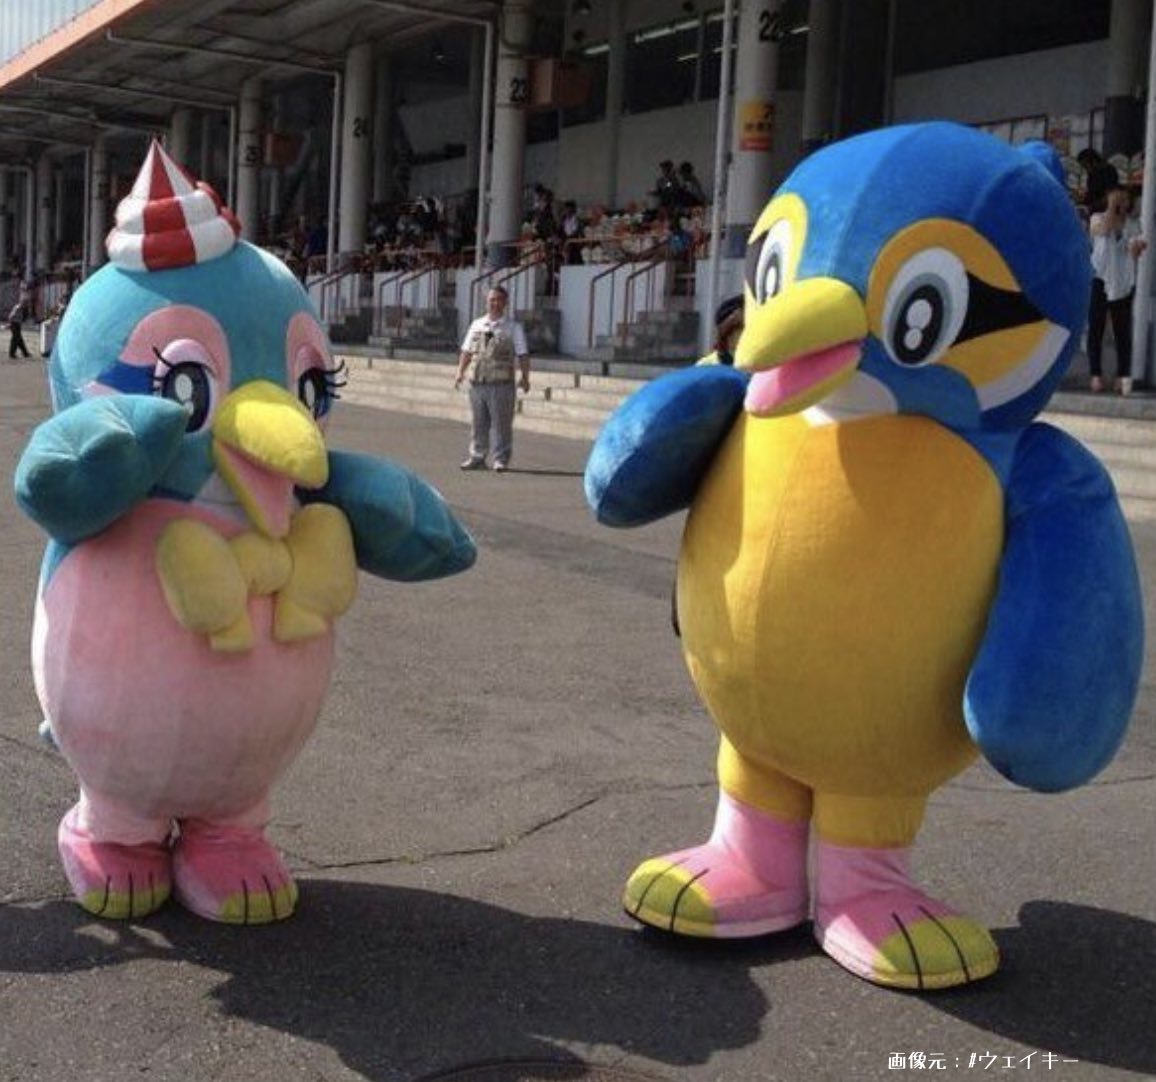 多摩川競艇場のマスコットキャラクター、ウェイキーとリップルの画像